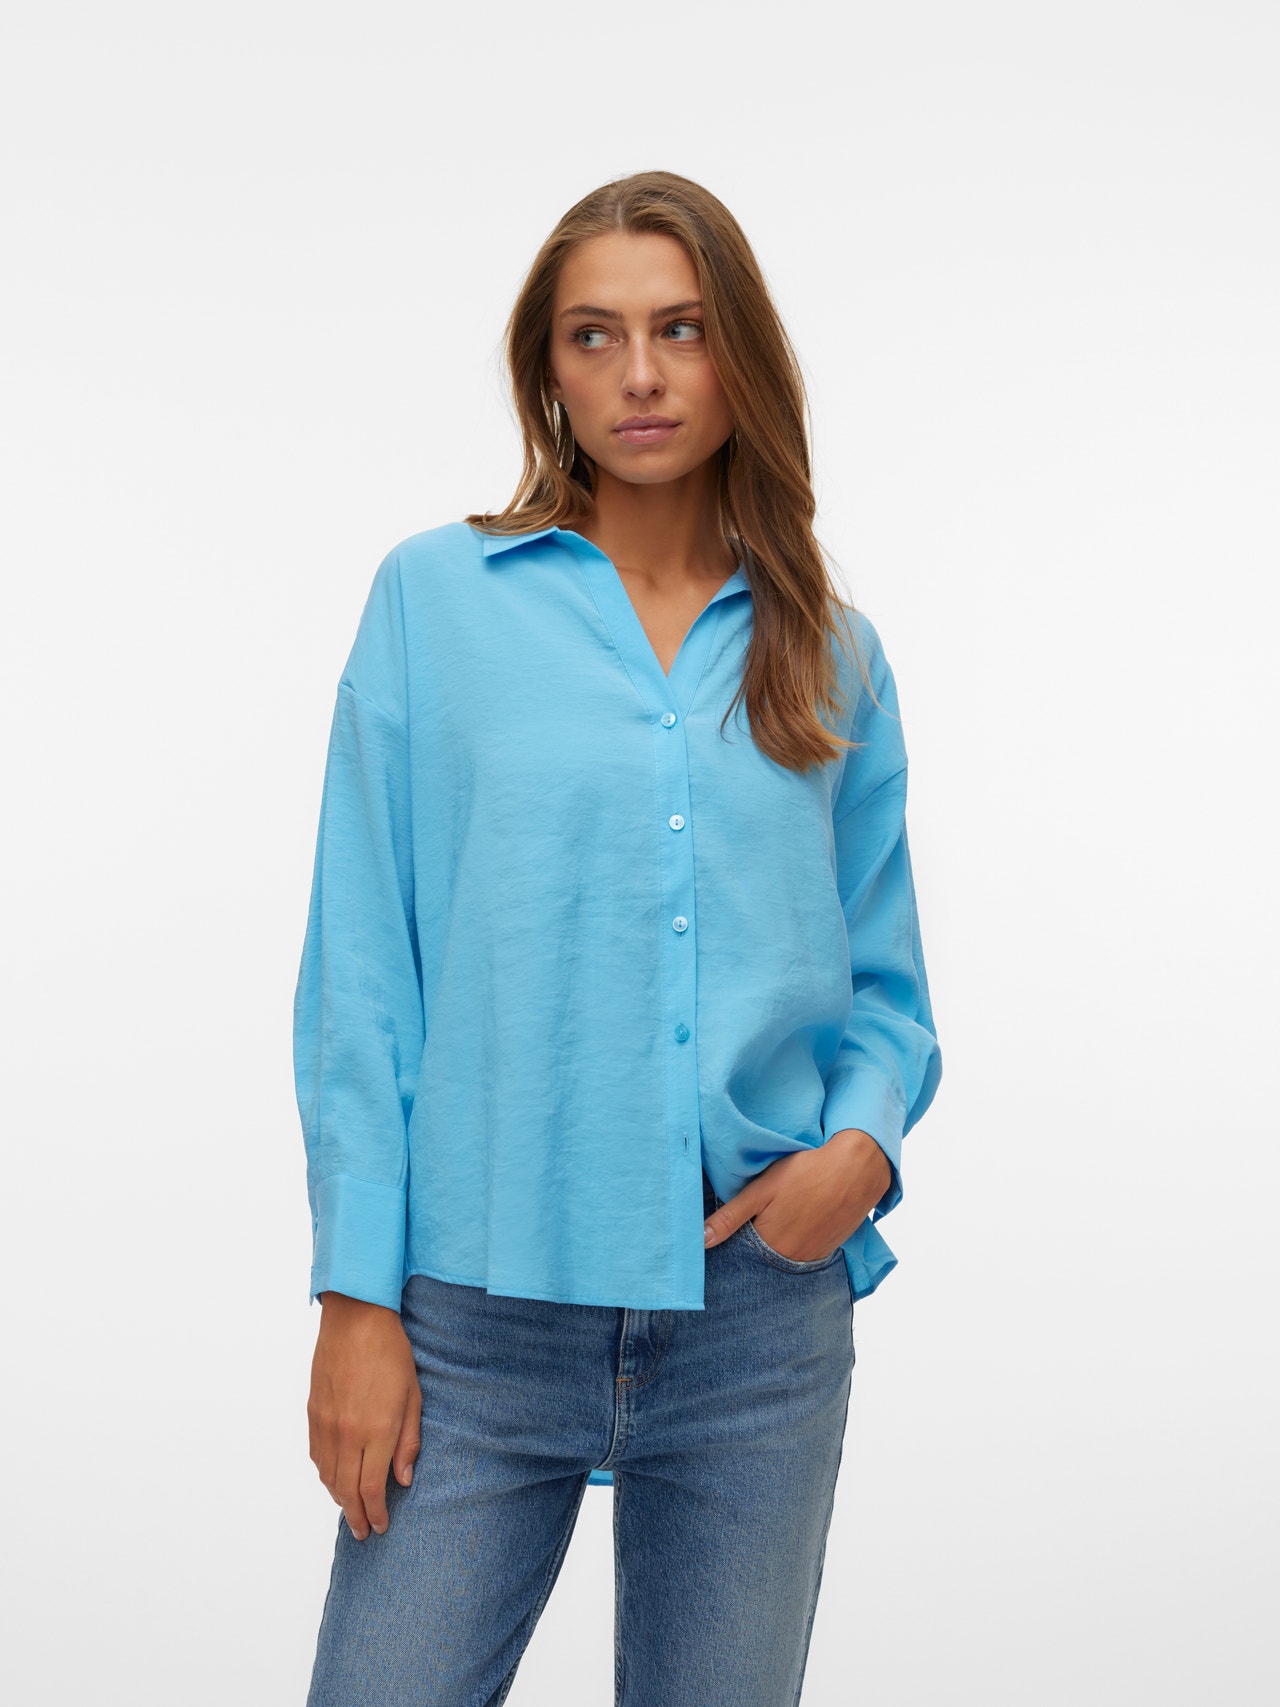 Vero Moda VMQUEENY Shirt -Bonnie Blue - 10289349